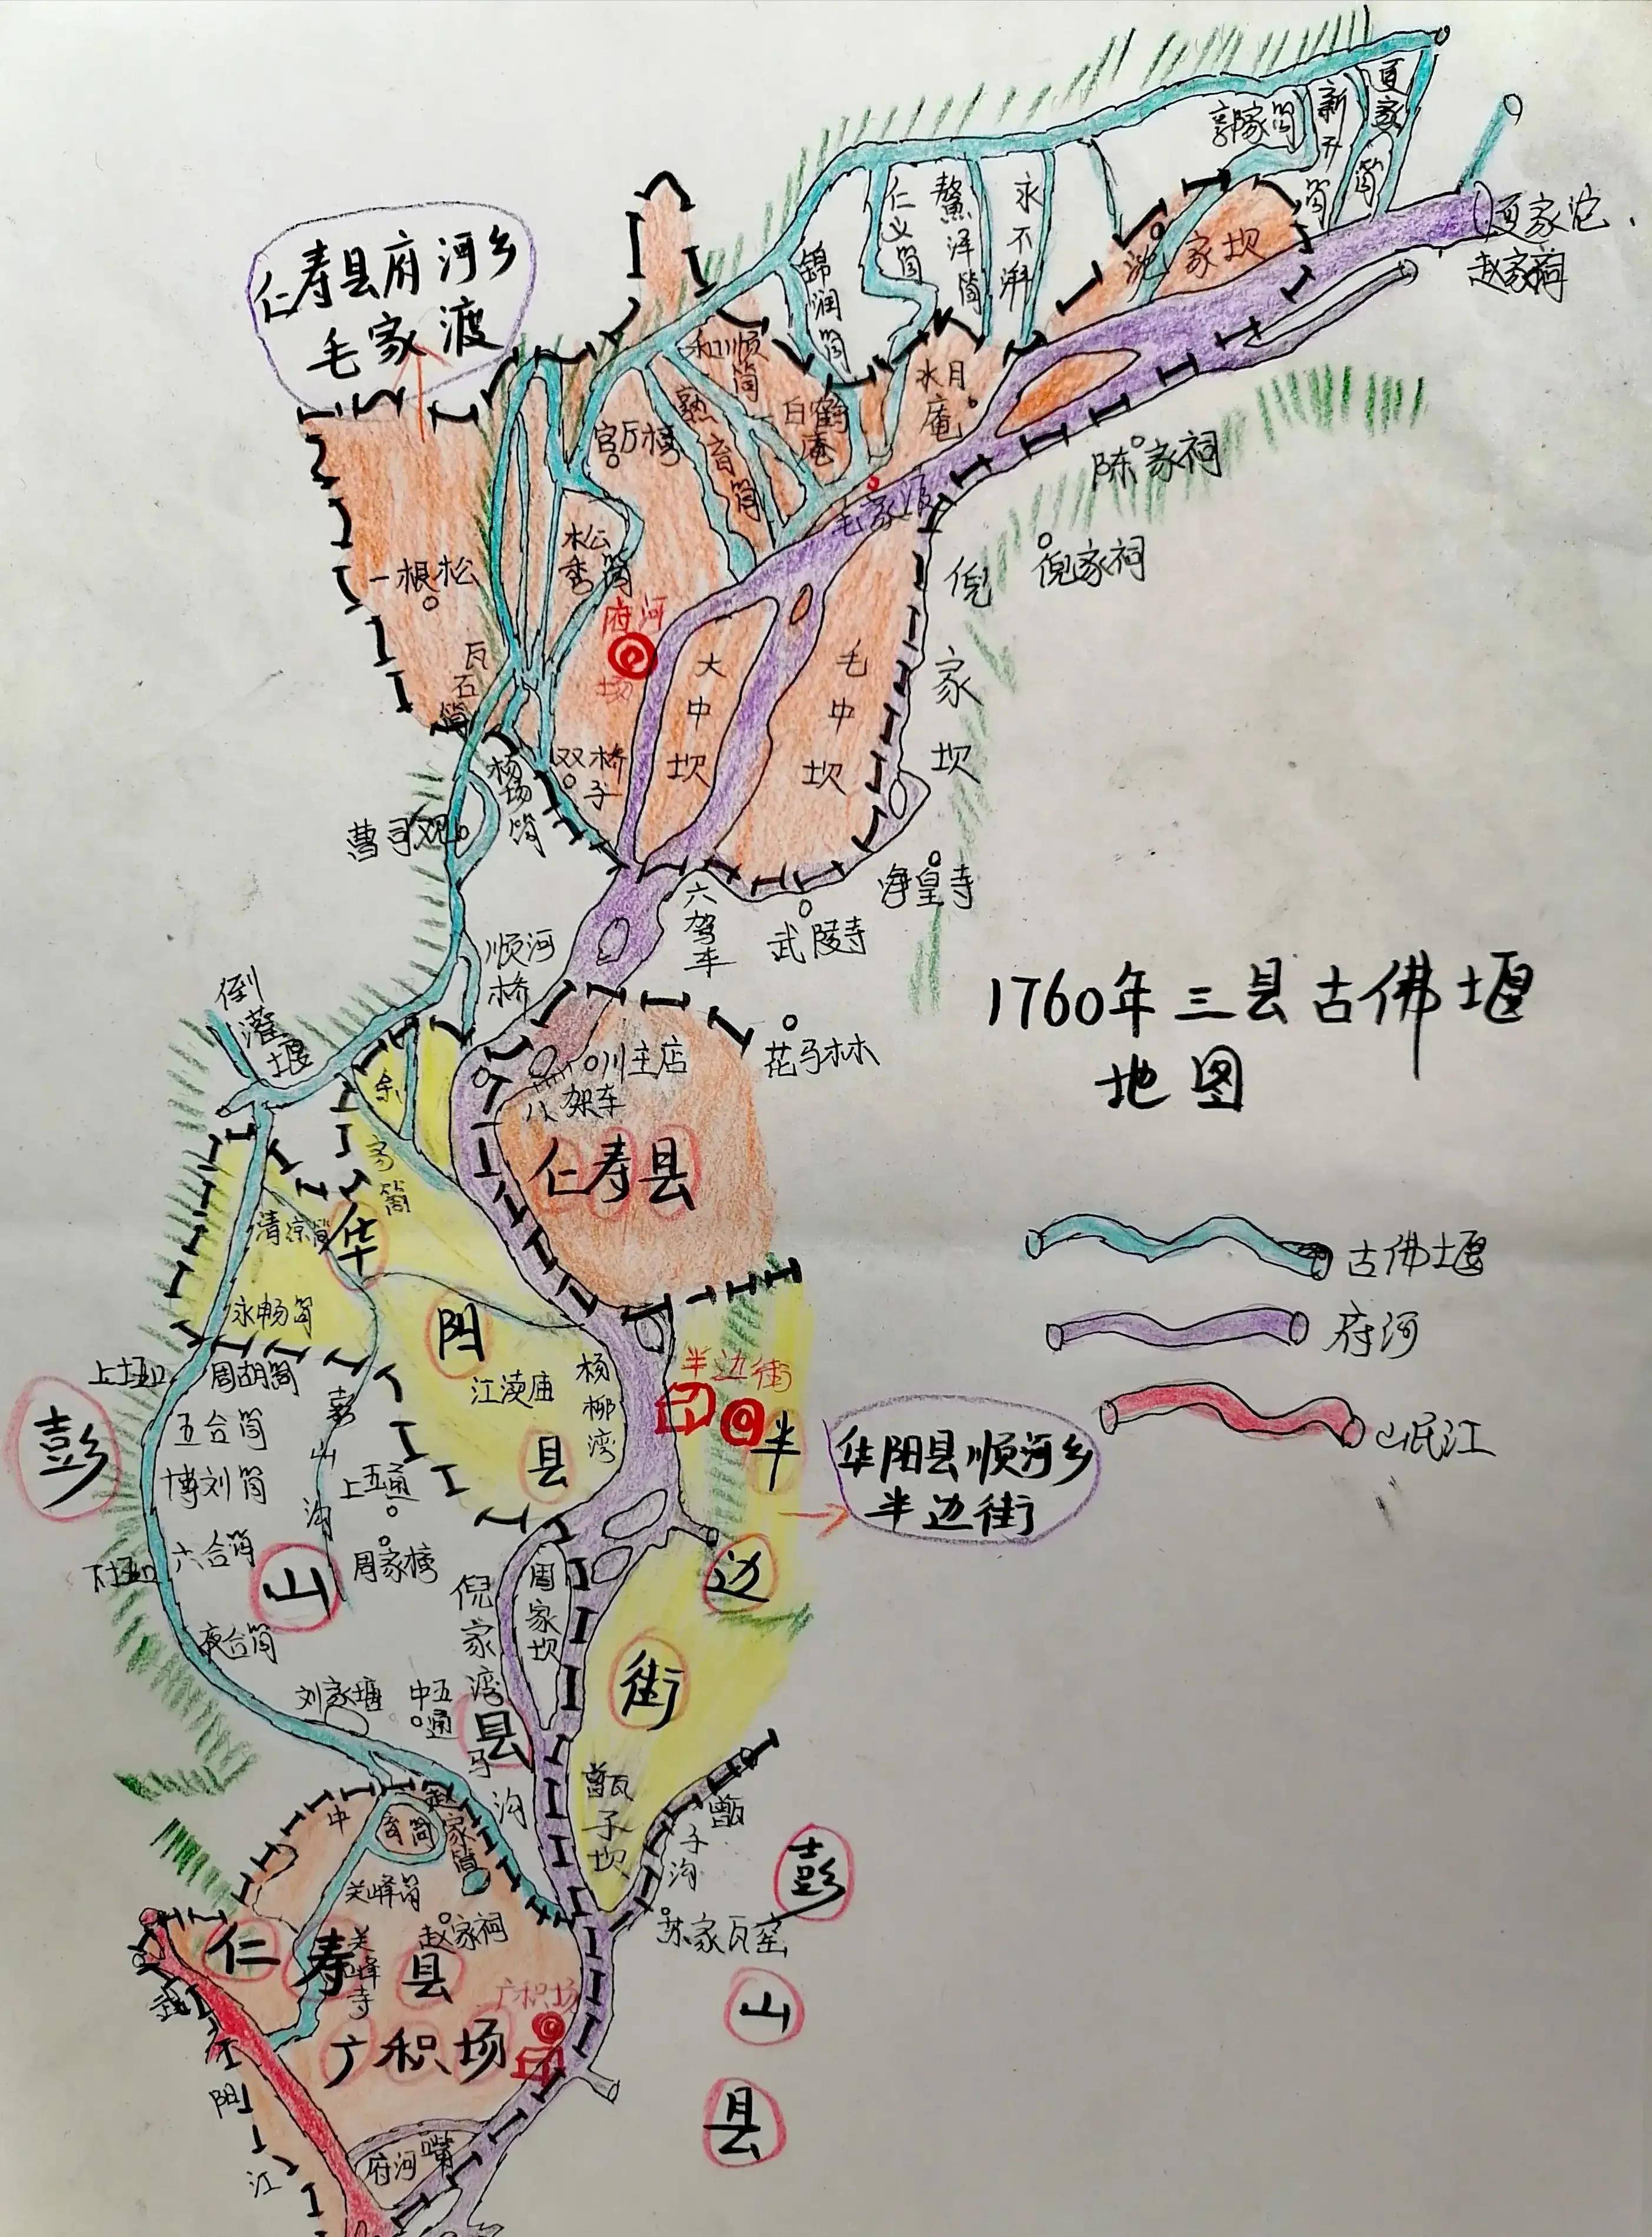 仁寿县谢安镇地图图片